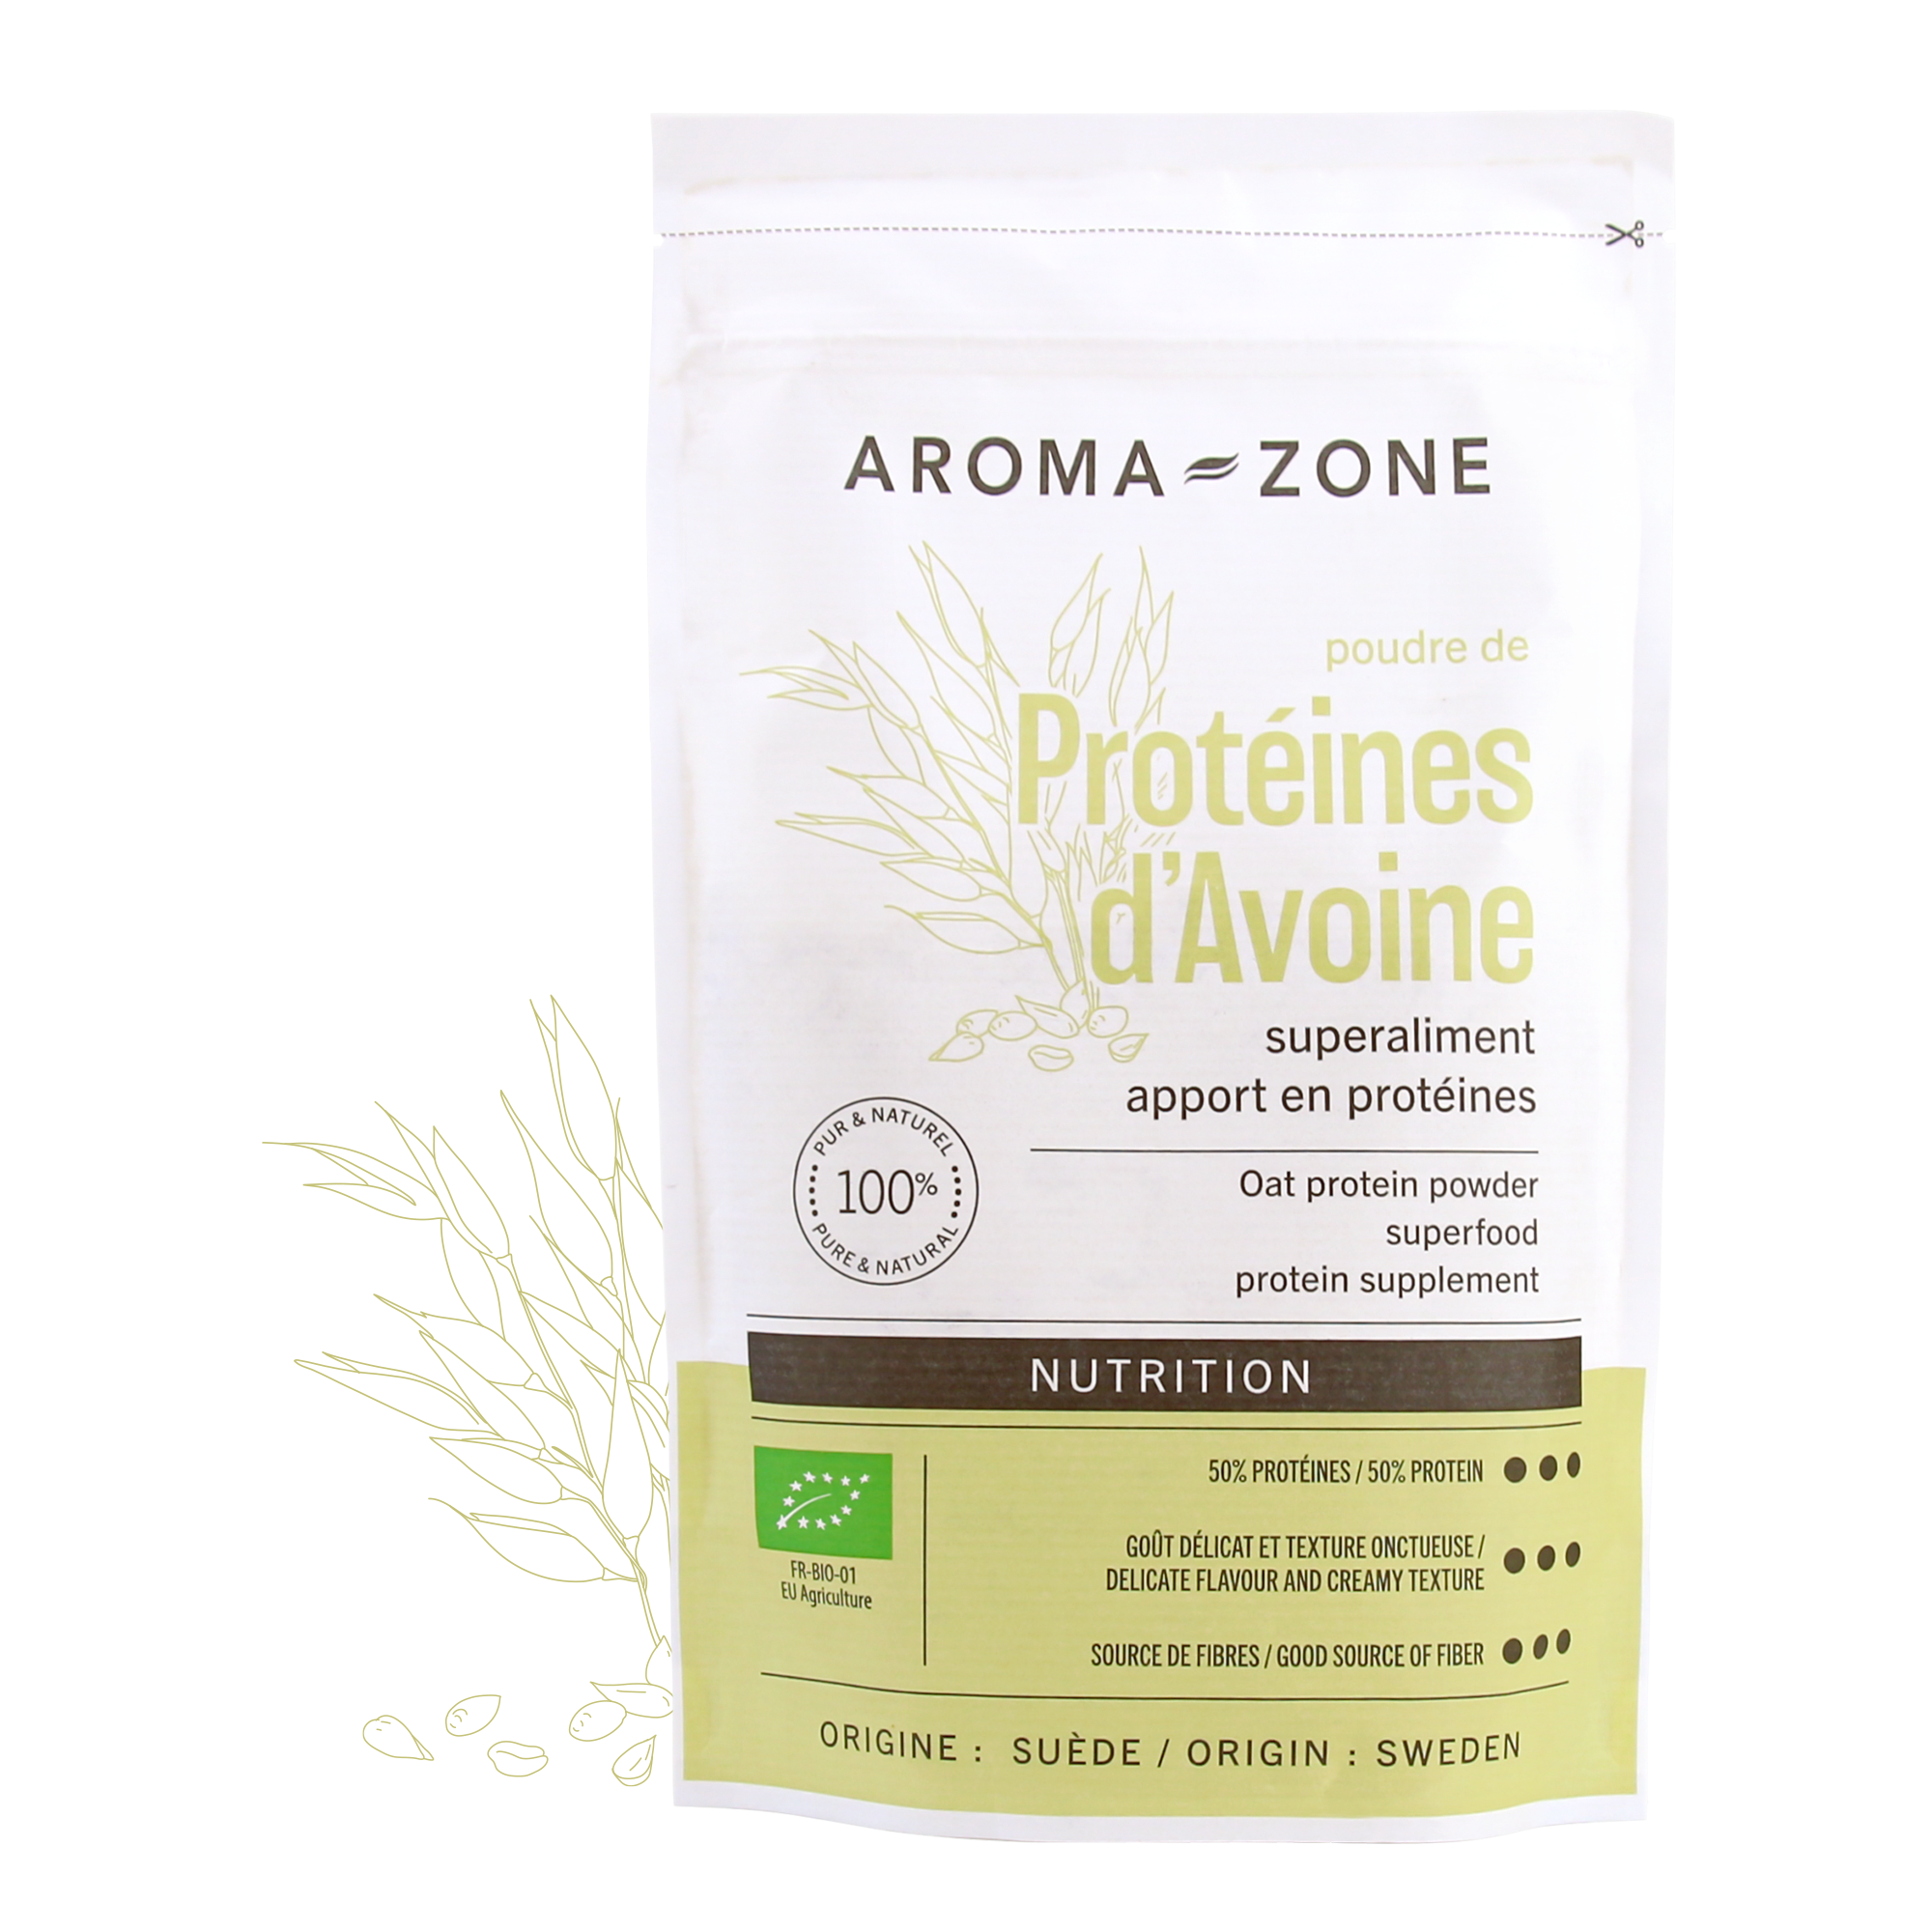 Poudre de Protéines d'Avoine BIO - Aroma-Zone